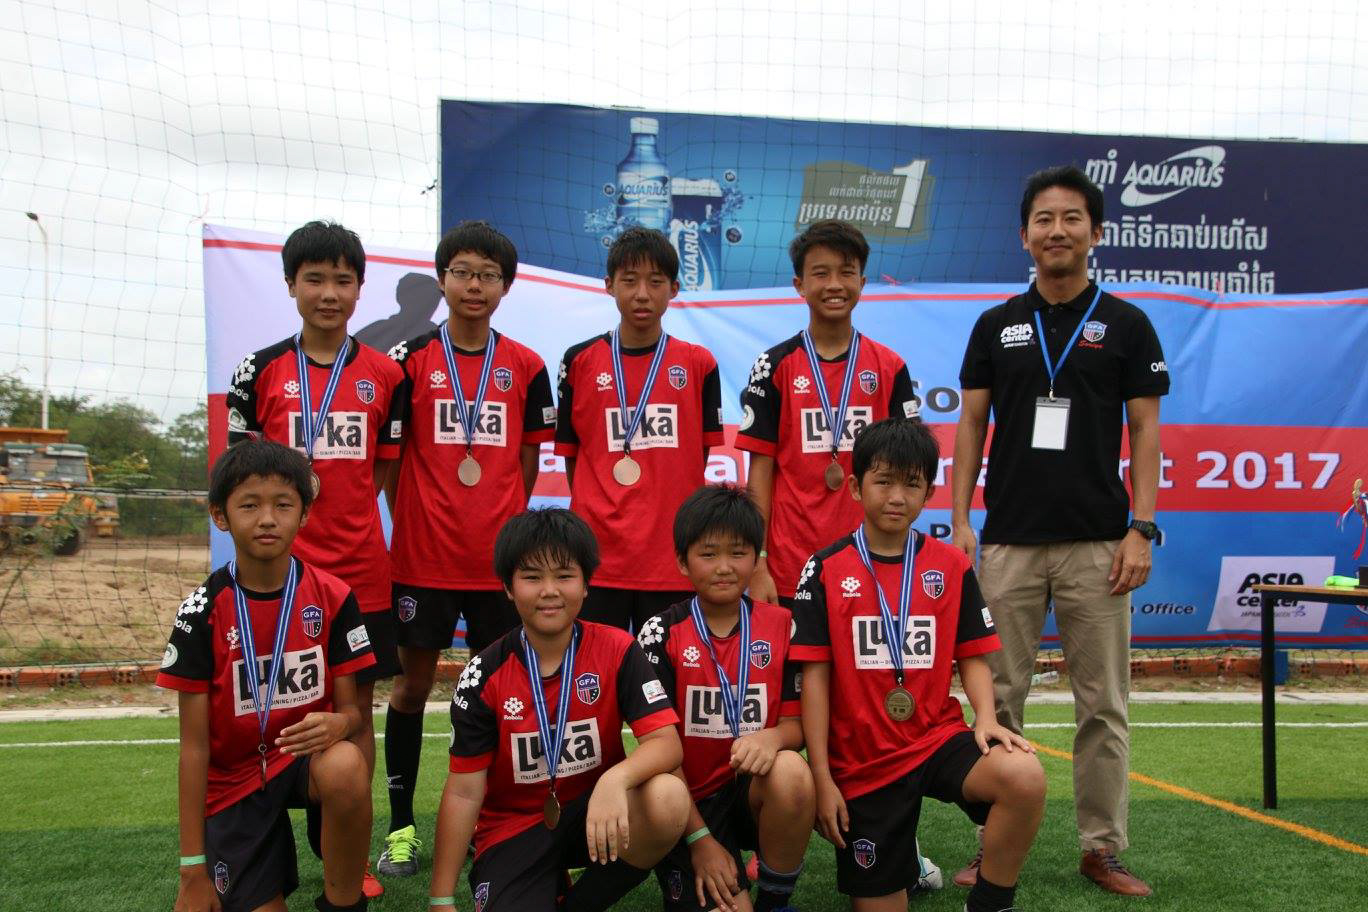 2nd Runner-up: GFA B (Singapore)